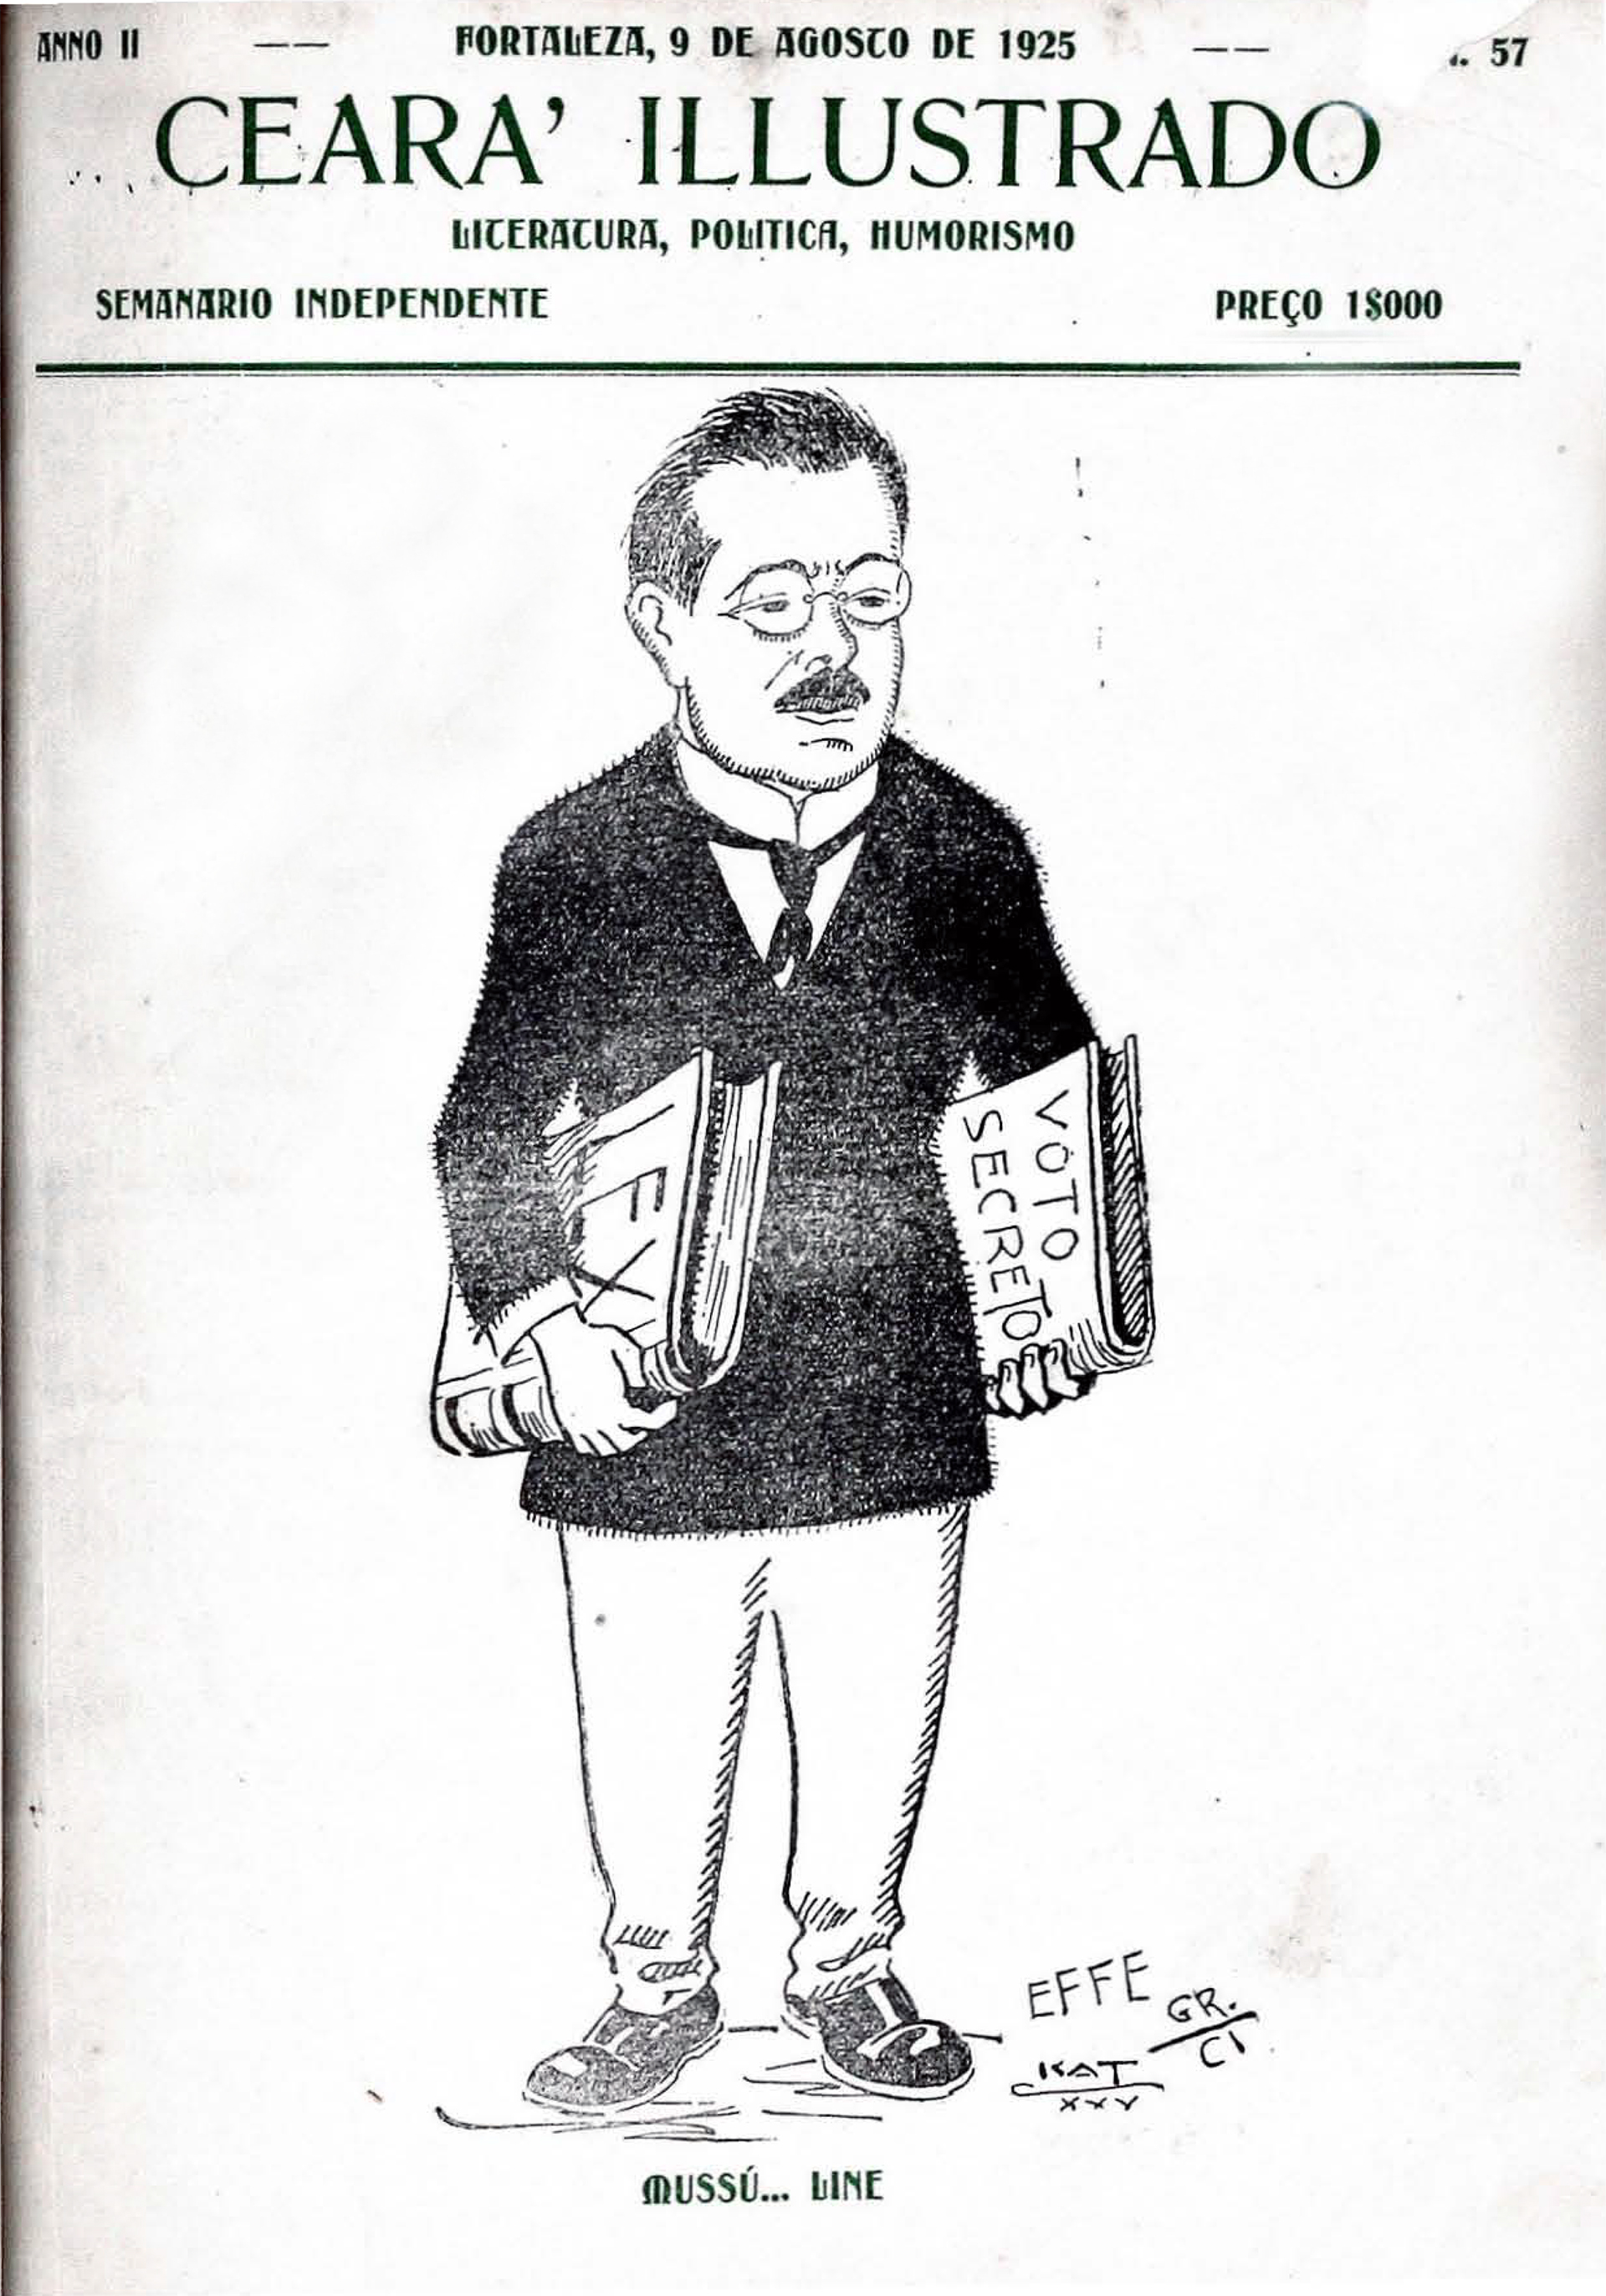 Capa da revista Ceará Illustrado com charge do Moreirinha, adversário político de Demócrito Rocha (Foto: Acervo pessoal )